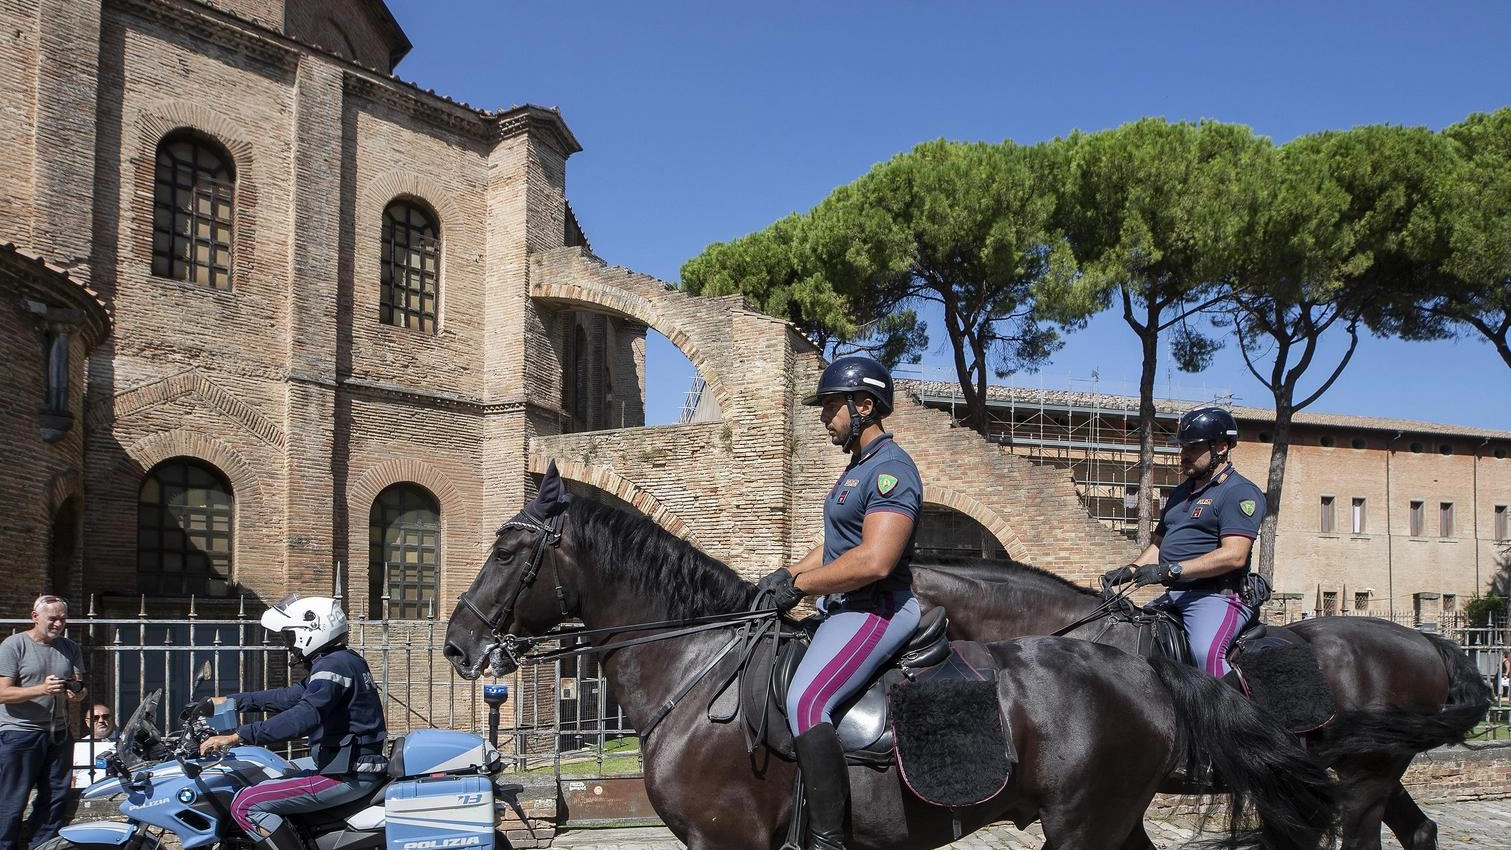 La polizia va (anche) a cavallo  "In sella a Diodoro e Luiss  più sicurezza nei parchi"